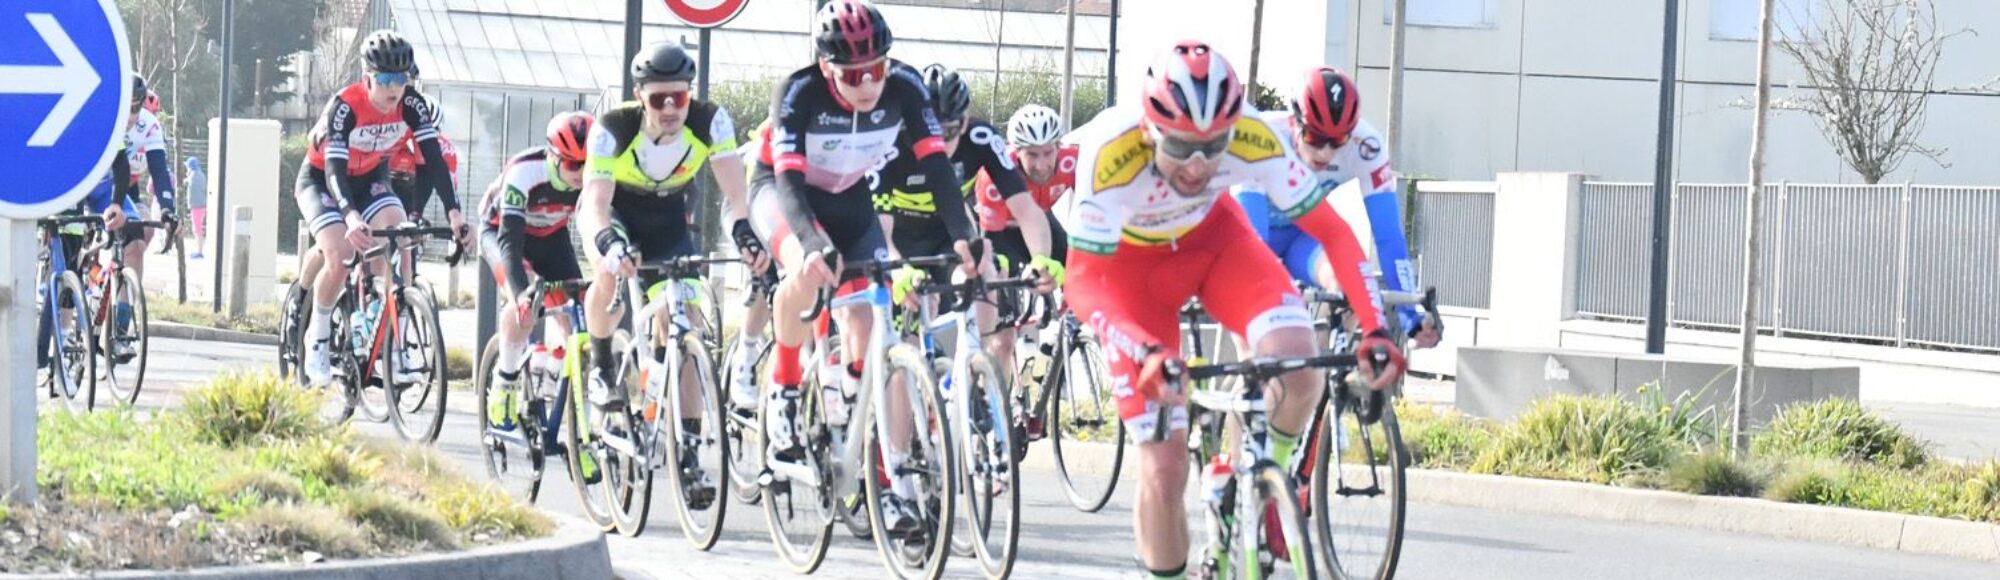 2022 Calais Wimille ronde course cycliste _1500px dans le Boulonnais et le pas de calais2